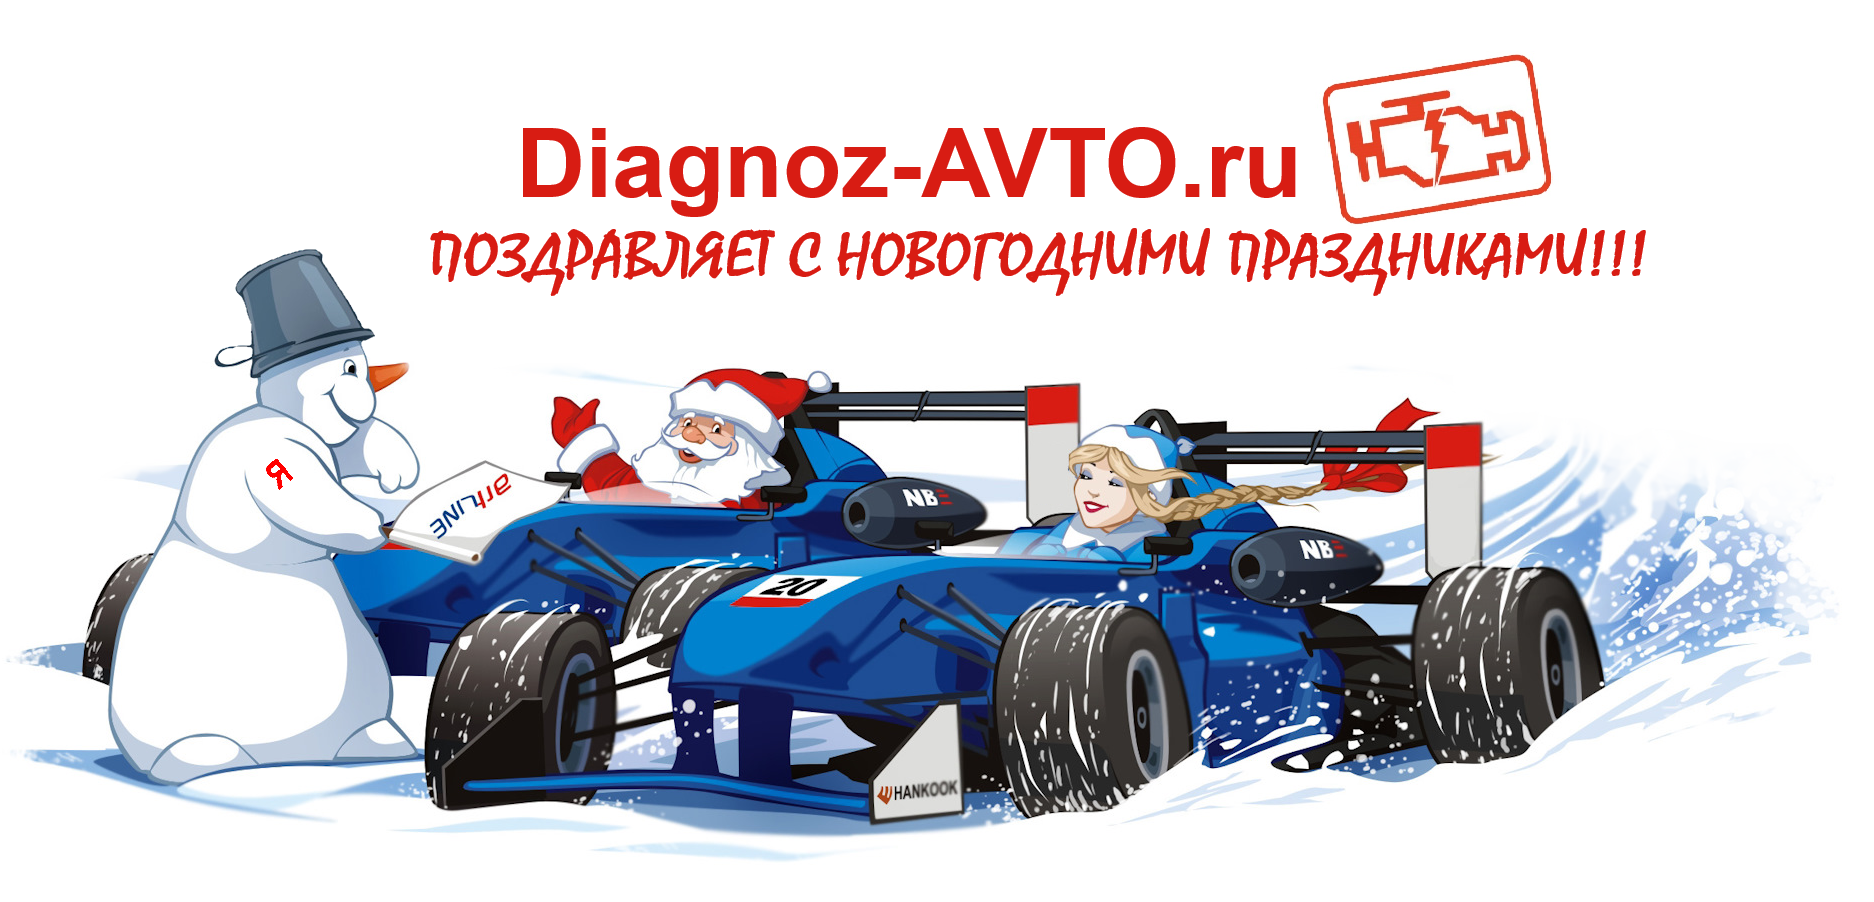  Diagnoz-AVTO.ru Поздравляет с Новогодними праздниками! 